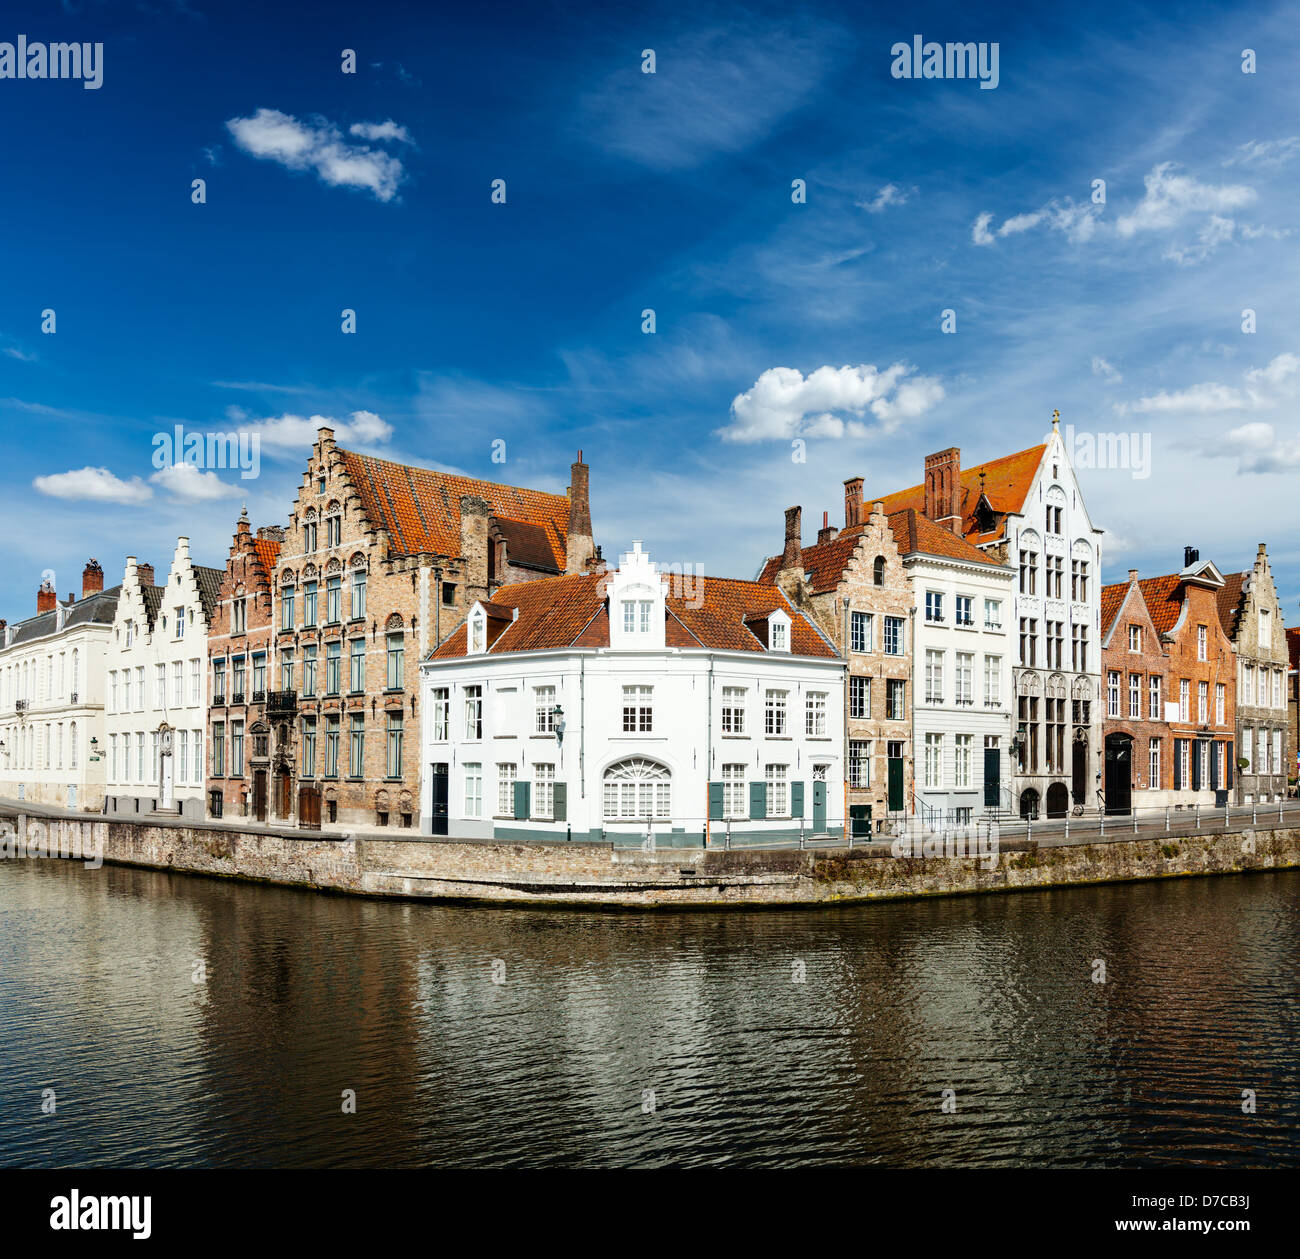 Travel concept Benelux - Fond du canal de Bruges et des maisons médiévales. Brugge, Belgique Banque D'Images